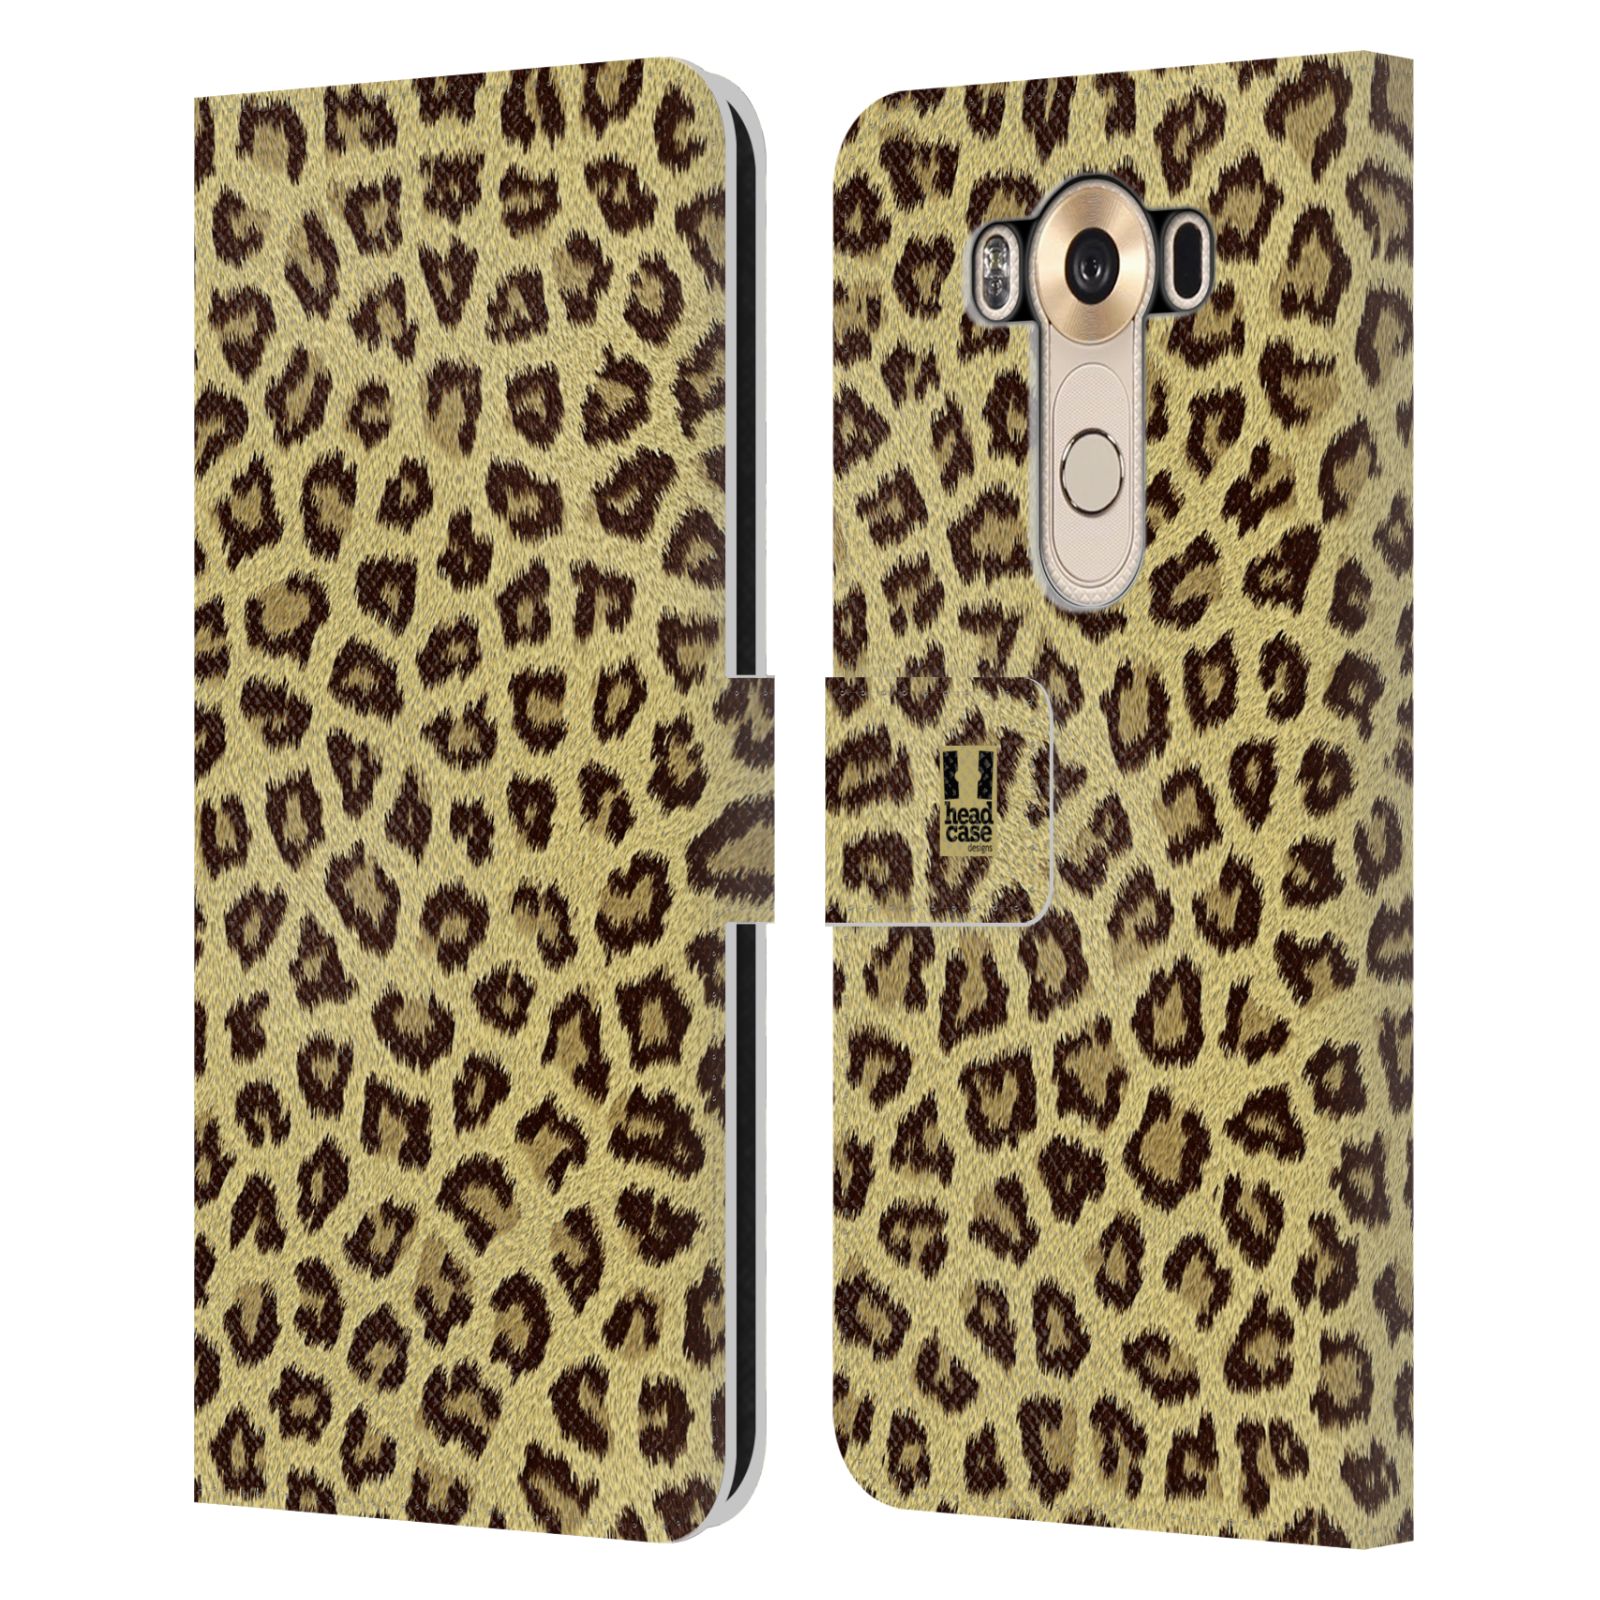 HEAD CASE Flipové pouzdro pro mobil LG V10 zvíře srst divoká kolekce jaguár, gepard